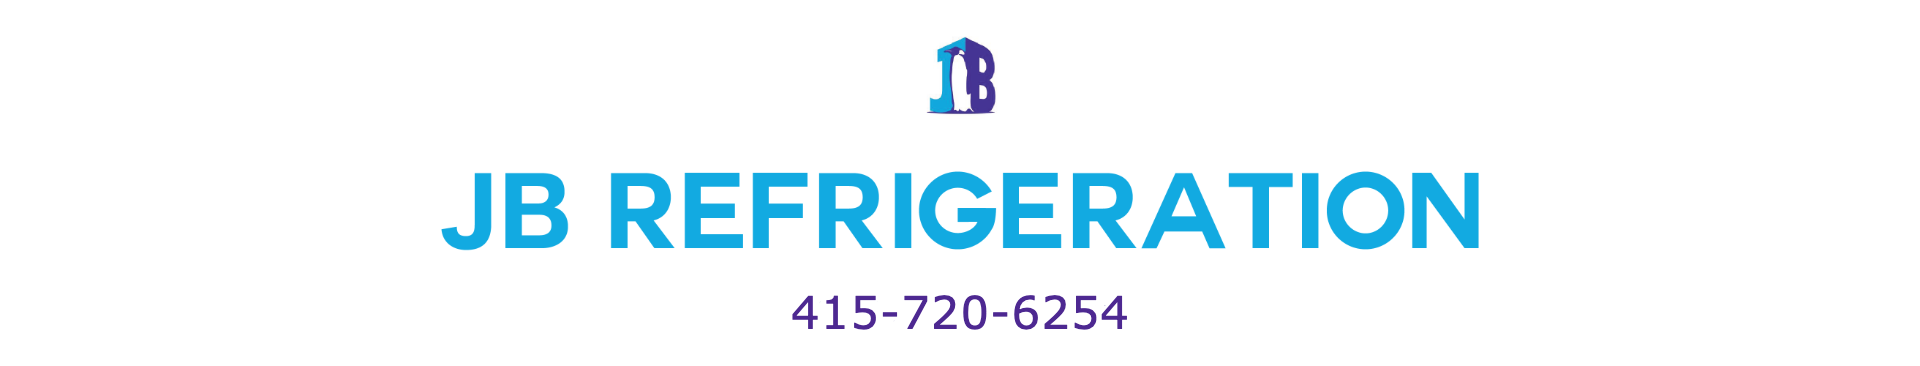 JB Refrigeration 1740 Sir Francis Drake Blvd, Fairfax California 94930